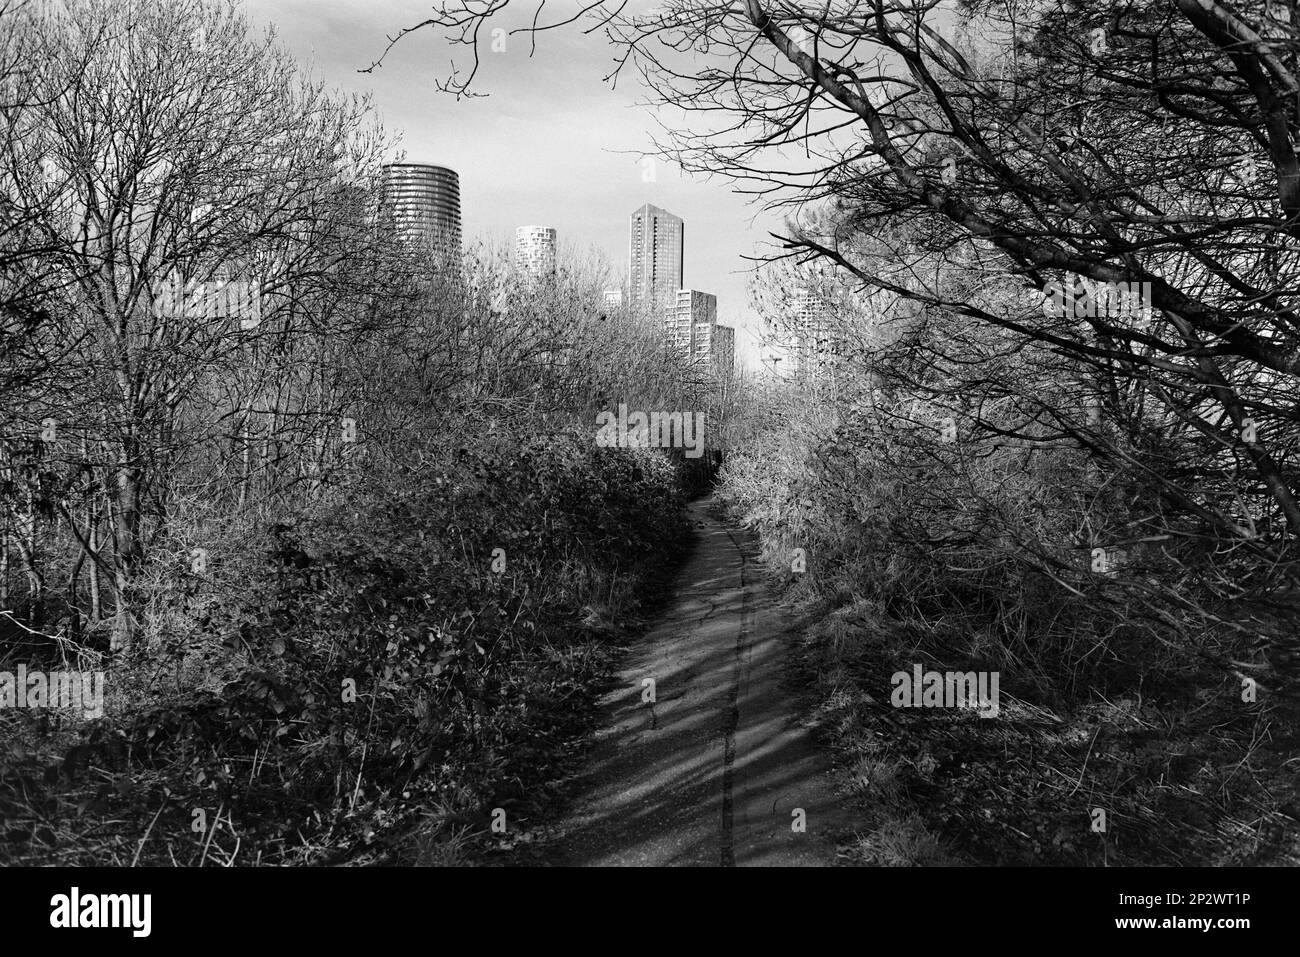 Fußweg am Rand des Mudshute Park, London Docklands, Großbritannien, mit Blick auf Gebäude an der Canary Wharf Stockfoto